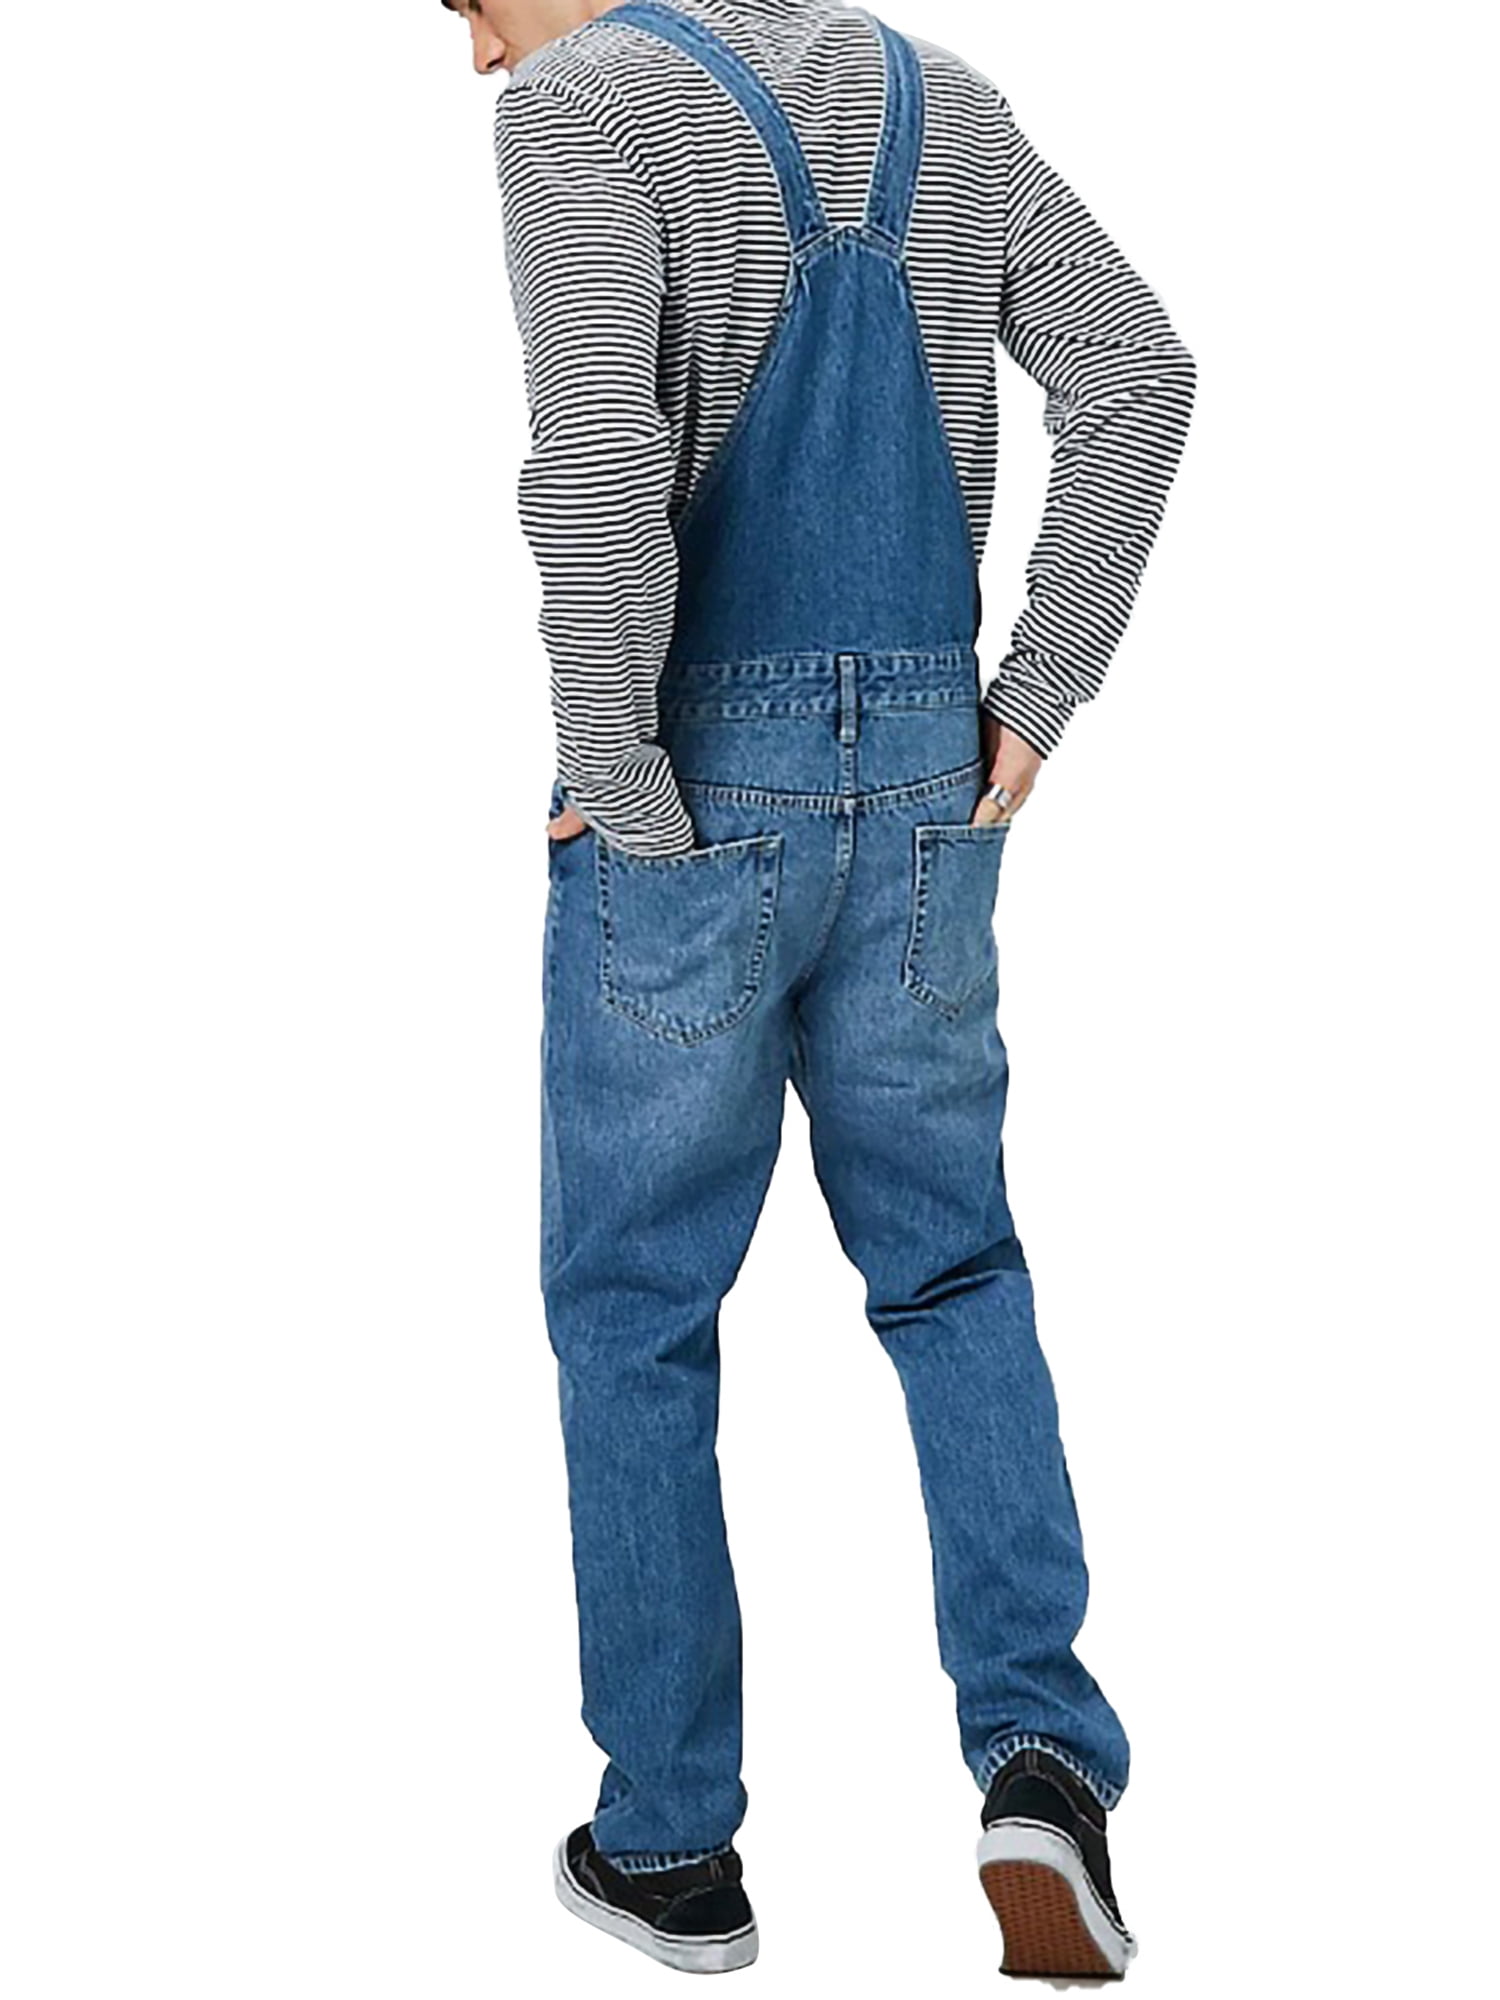 is er Begraafplaats stilte Herdignity Men's Denim Bib Overalls Jumpsuit Slim Dungaree Pants with  Pocket - Walmart.com